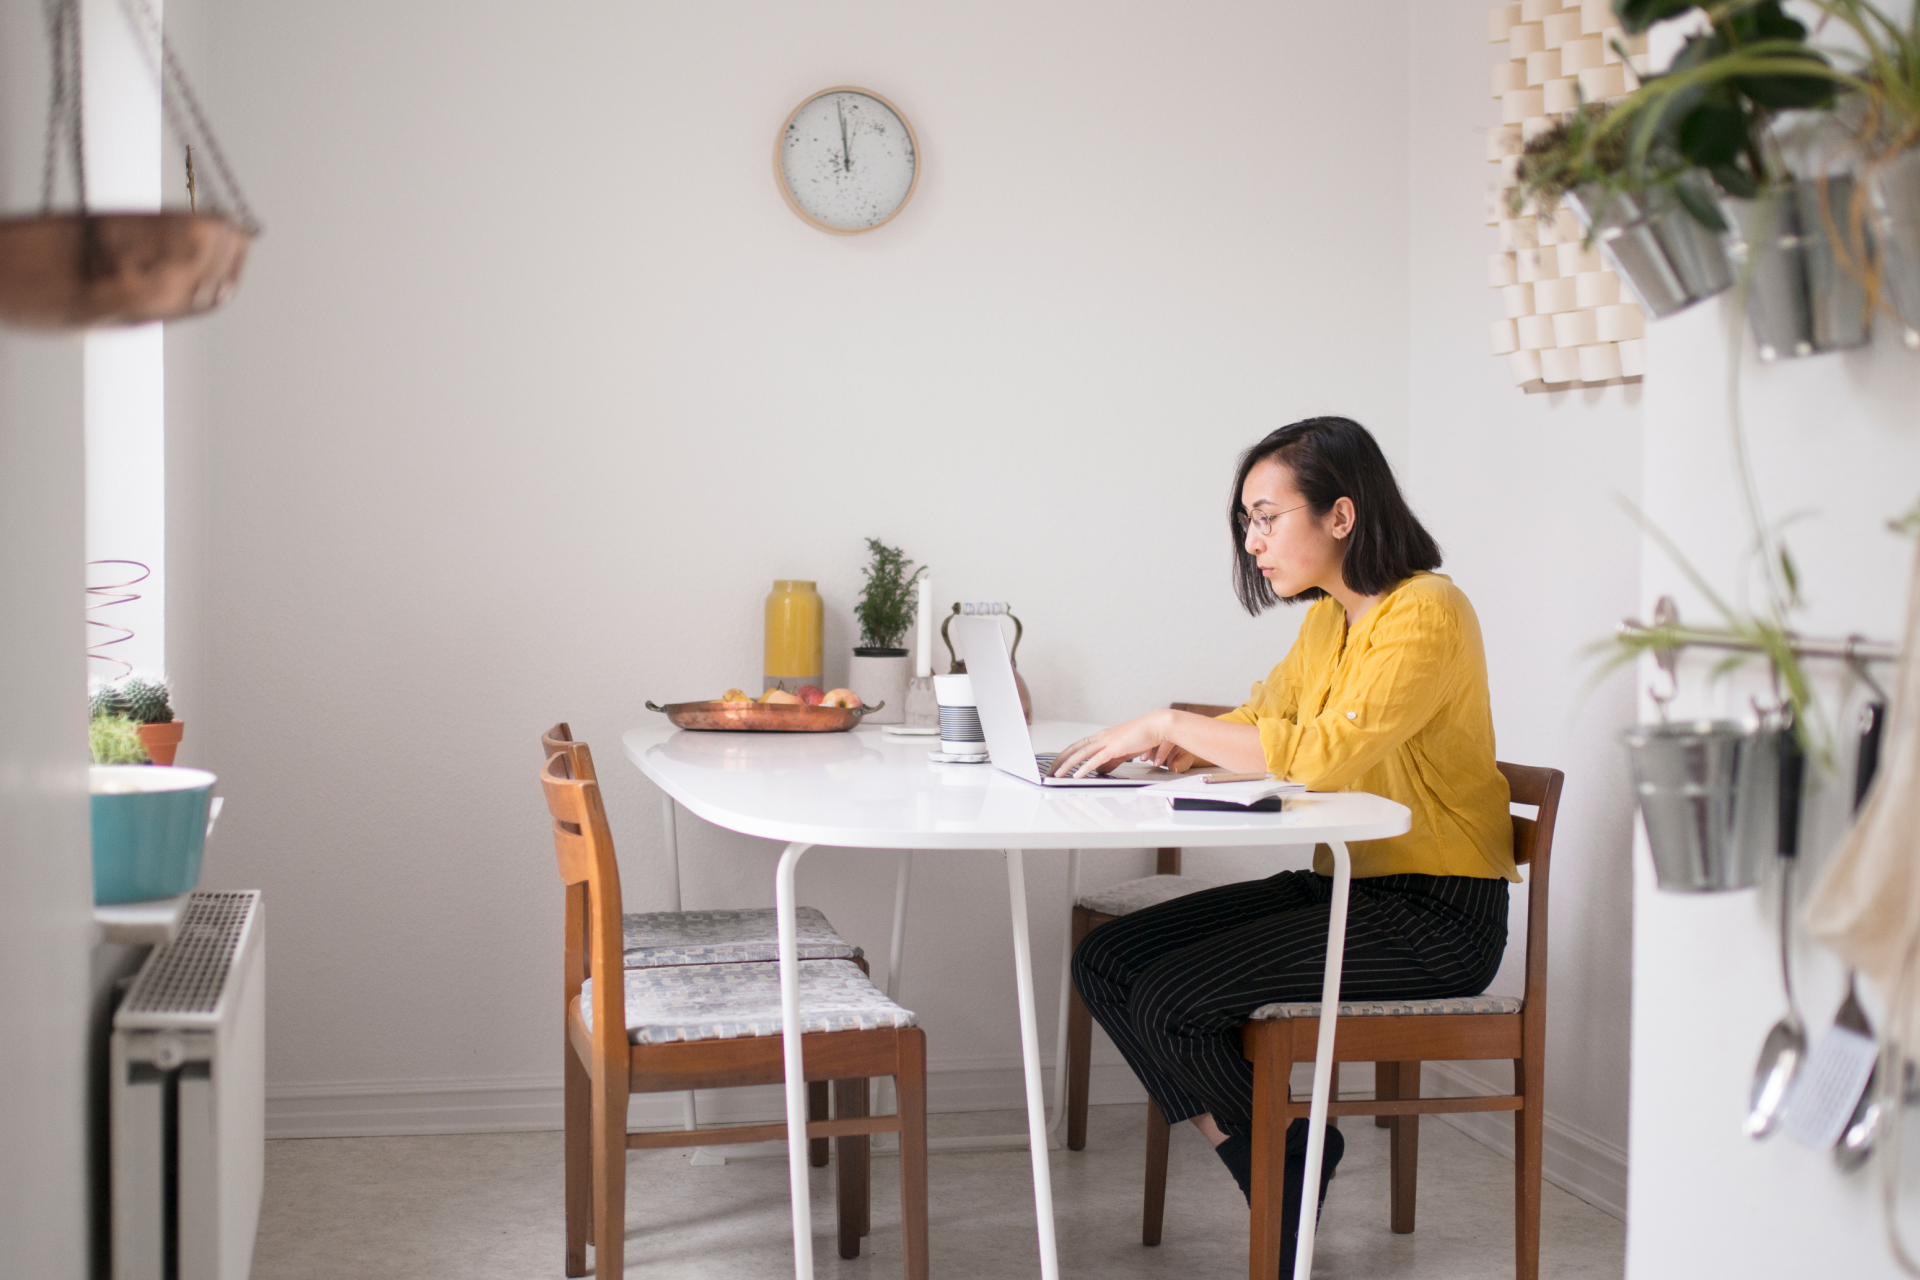 En person arbetar med en ny version av en fil från sitt hemmakontor